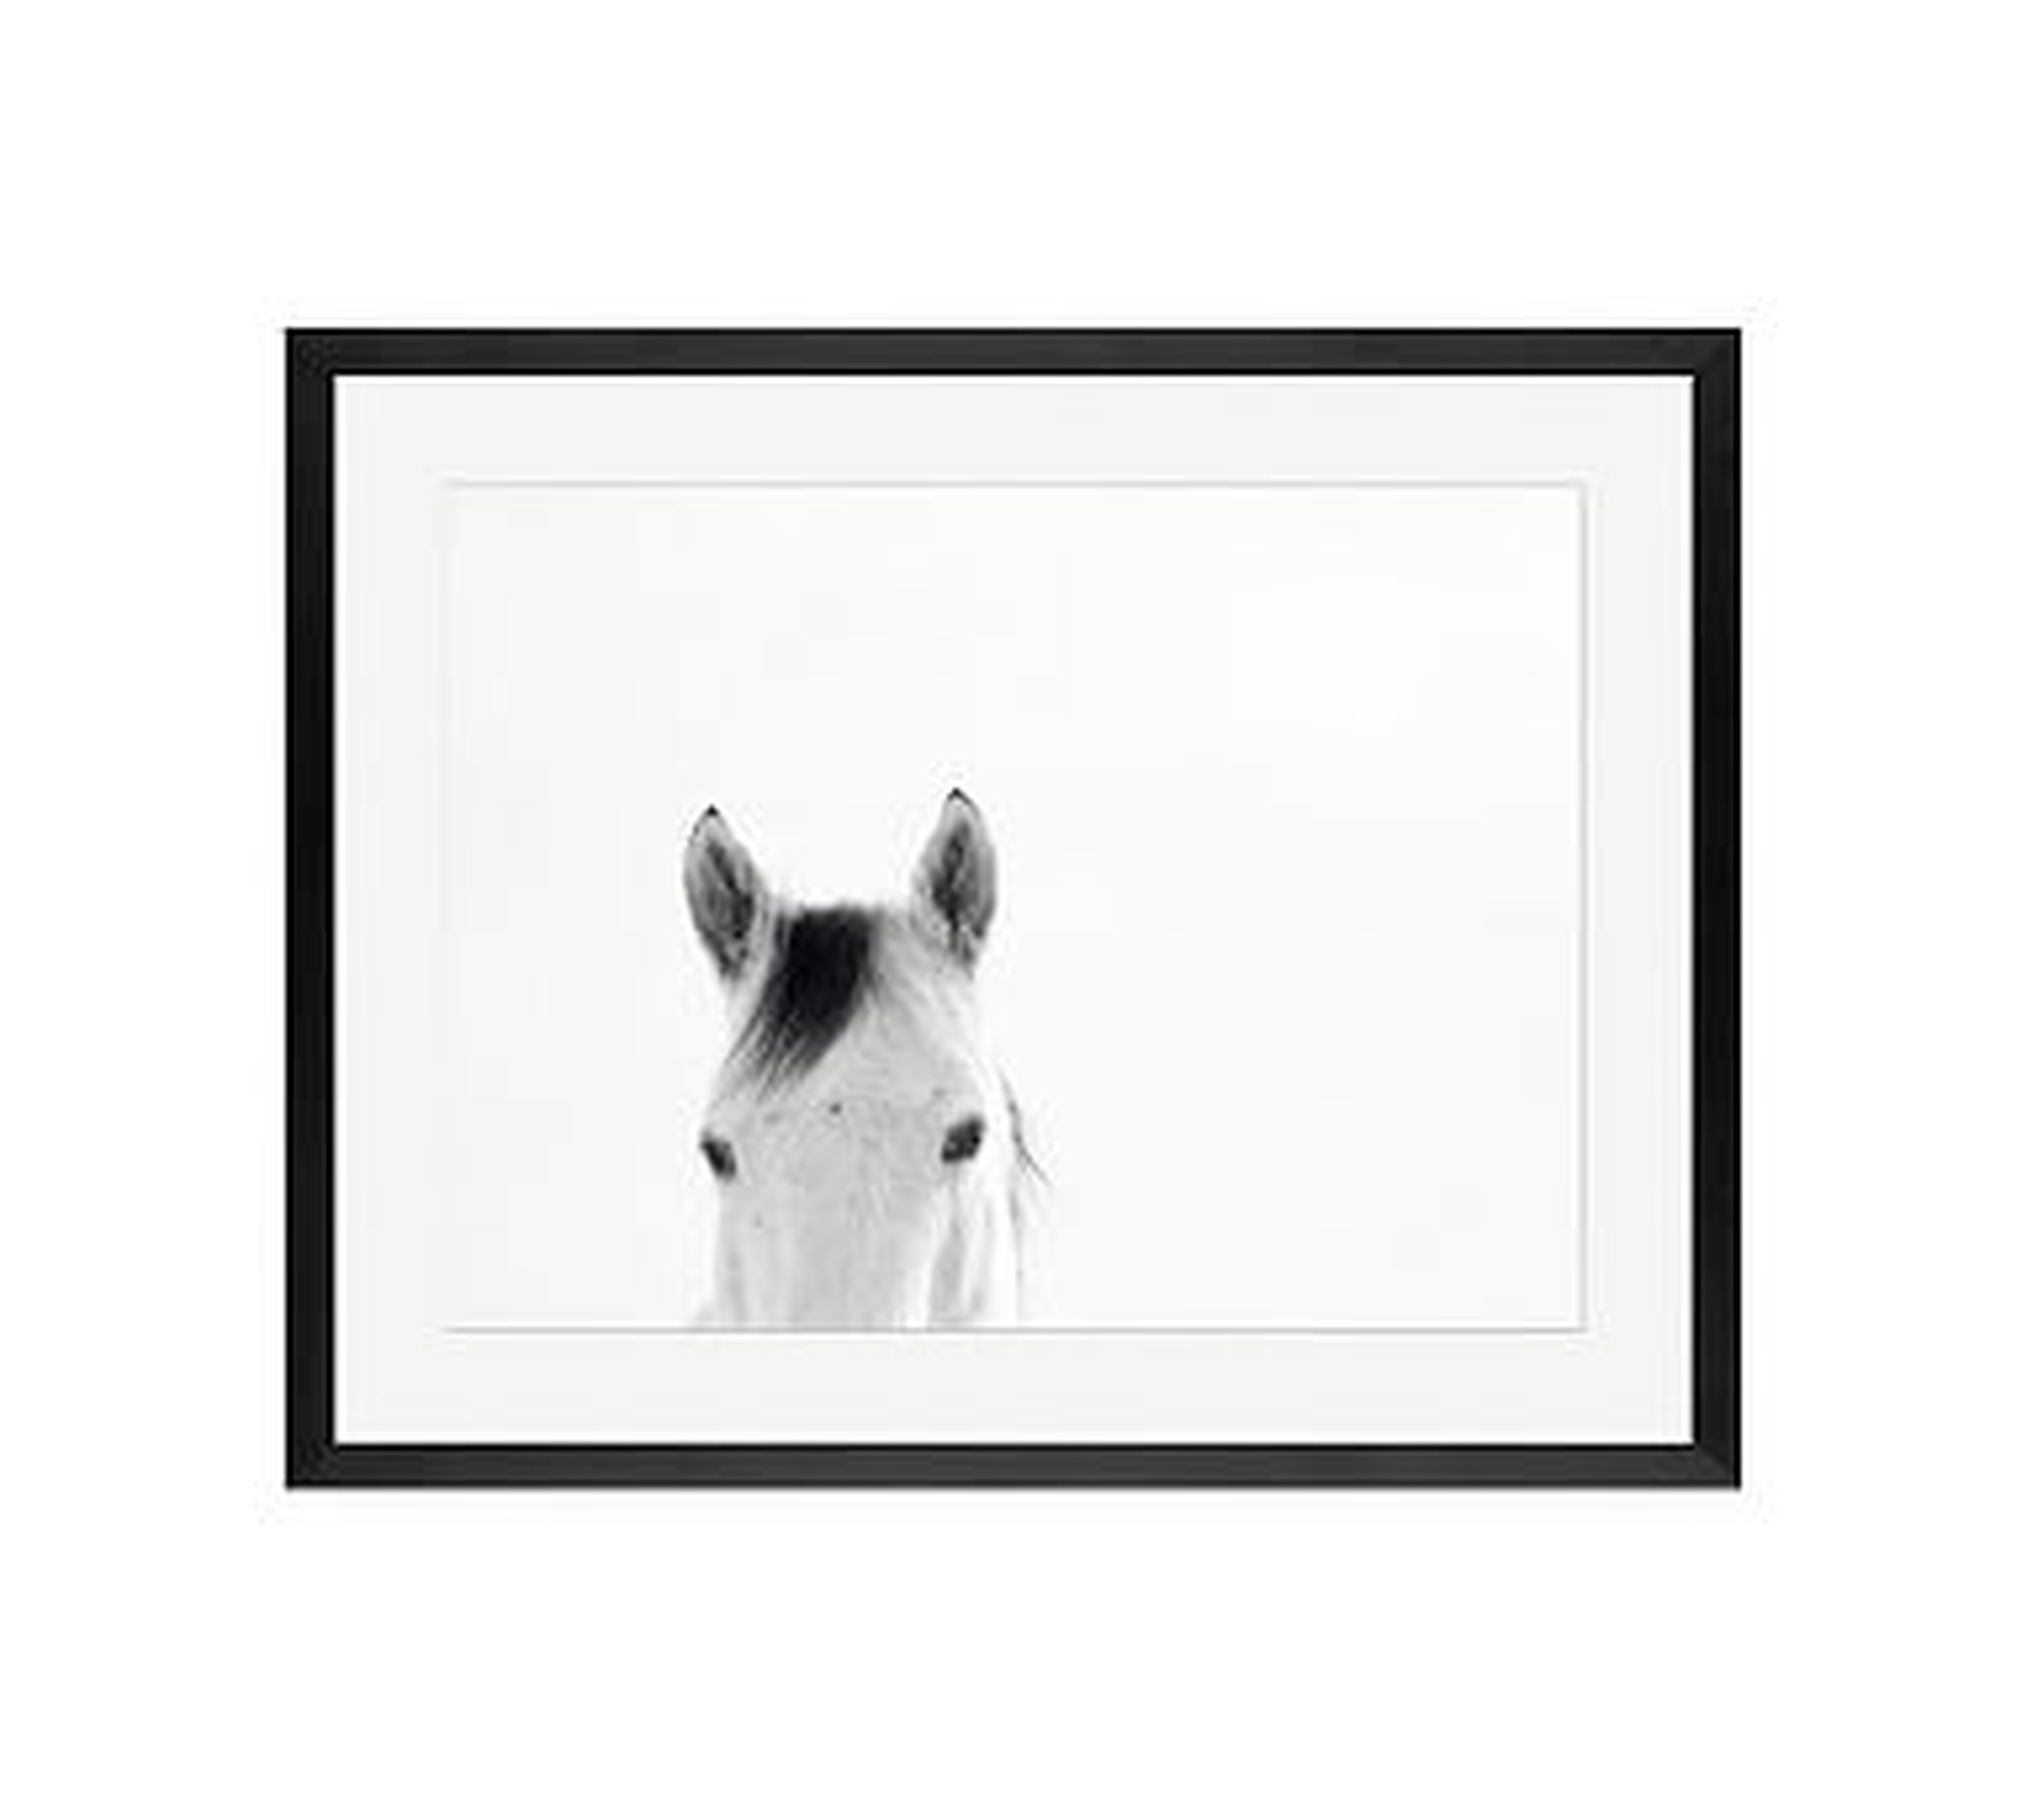 Modern White Horses Framed Print by Jennifer Meyers, 16x20", Wood Gallery Frame, Black, Mat - Pottery Barn